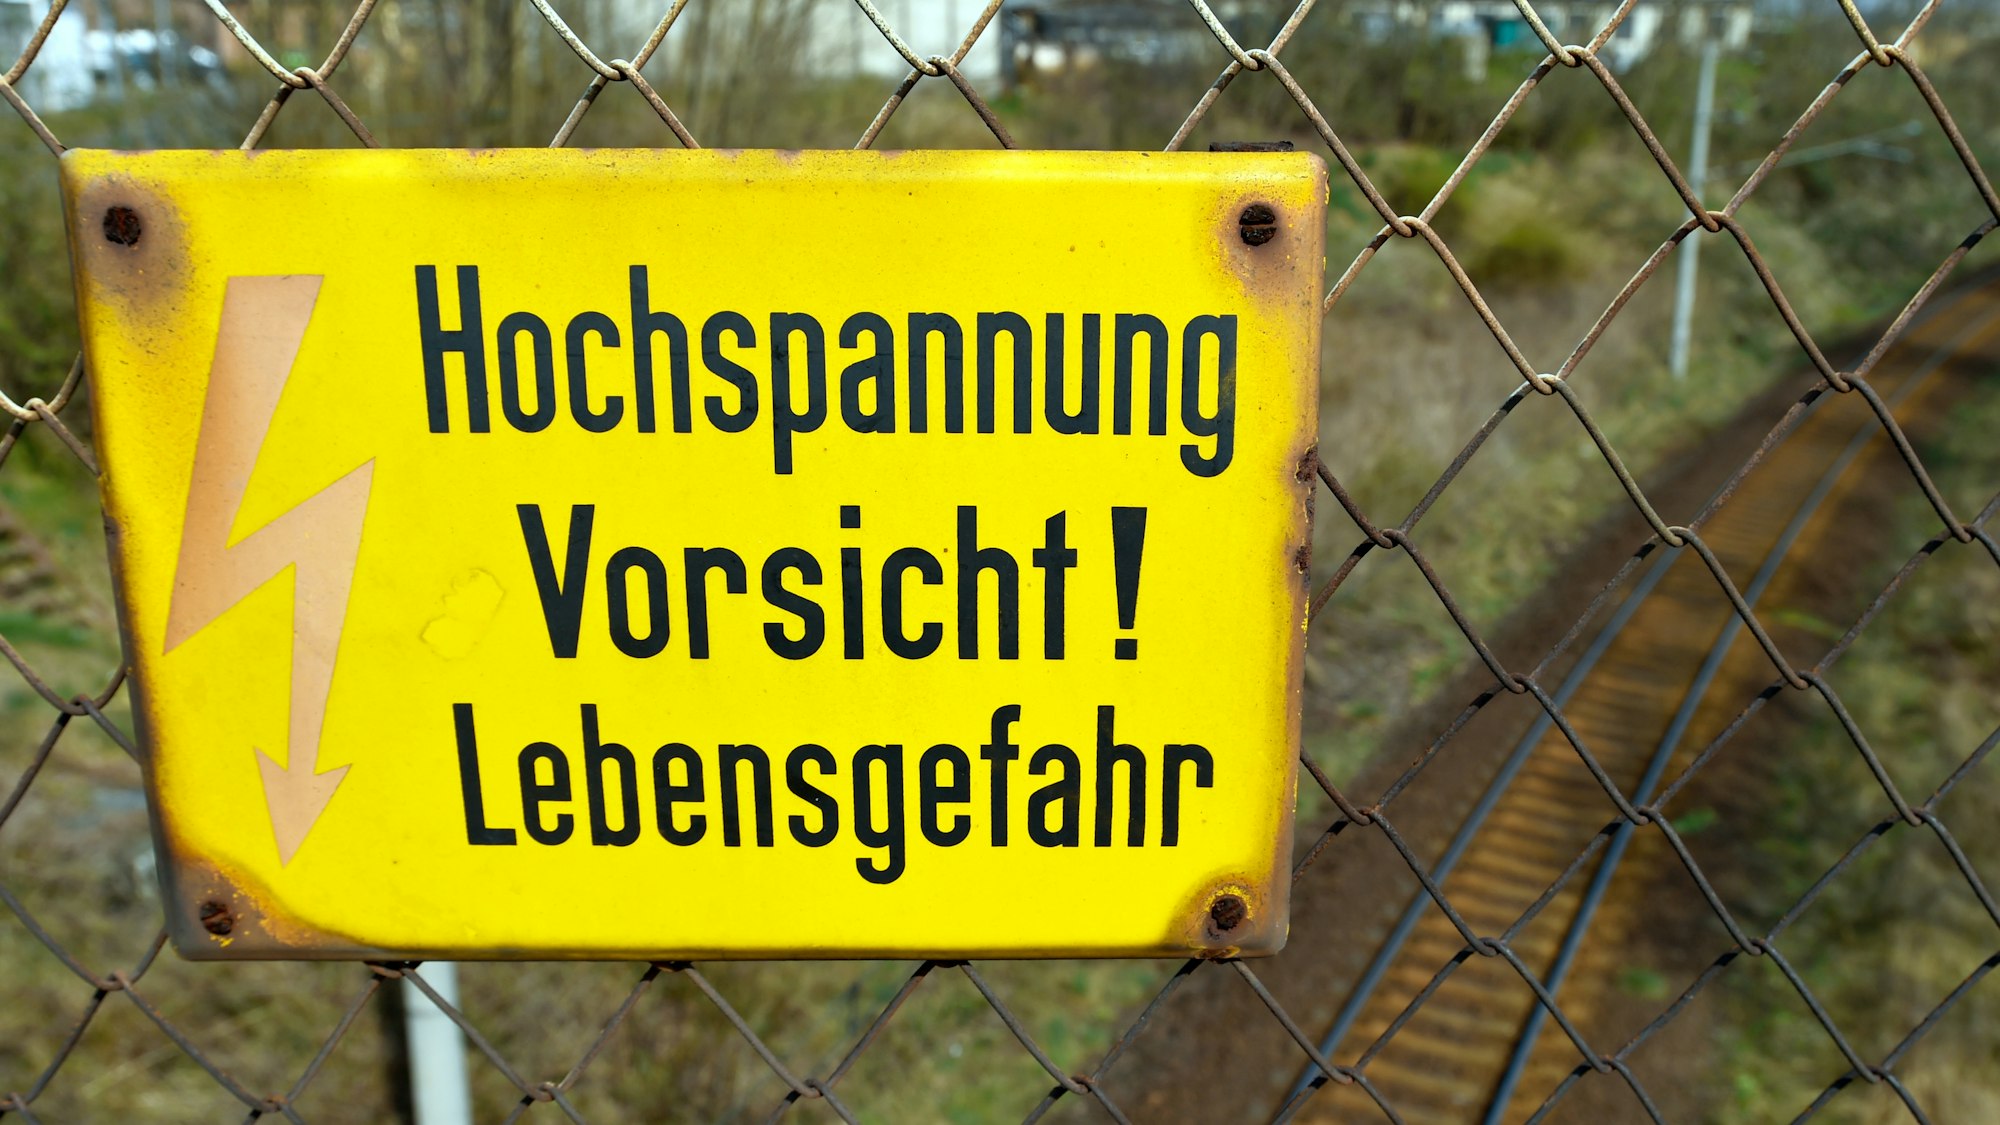 Das Symbolfoto zeigt ein deutsches Hinweisschild, das an einem Zaun hängt. Auf dem steht mit schwarz auf gelbem Untergrund „Hochspannung Vorsicht! Lebensgefahr”.